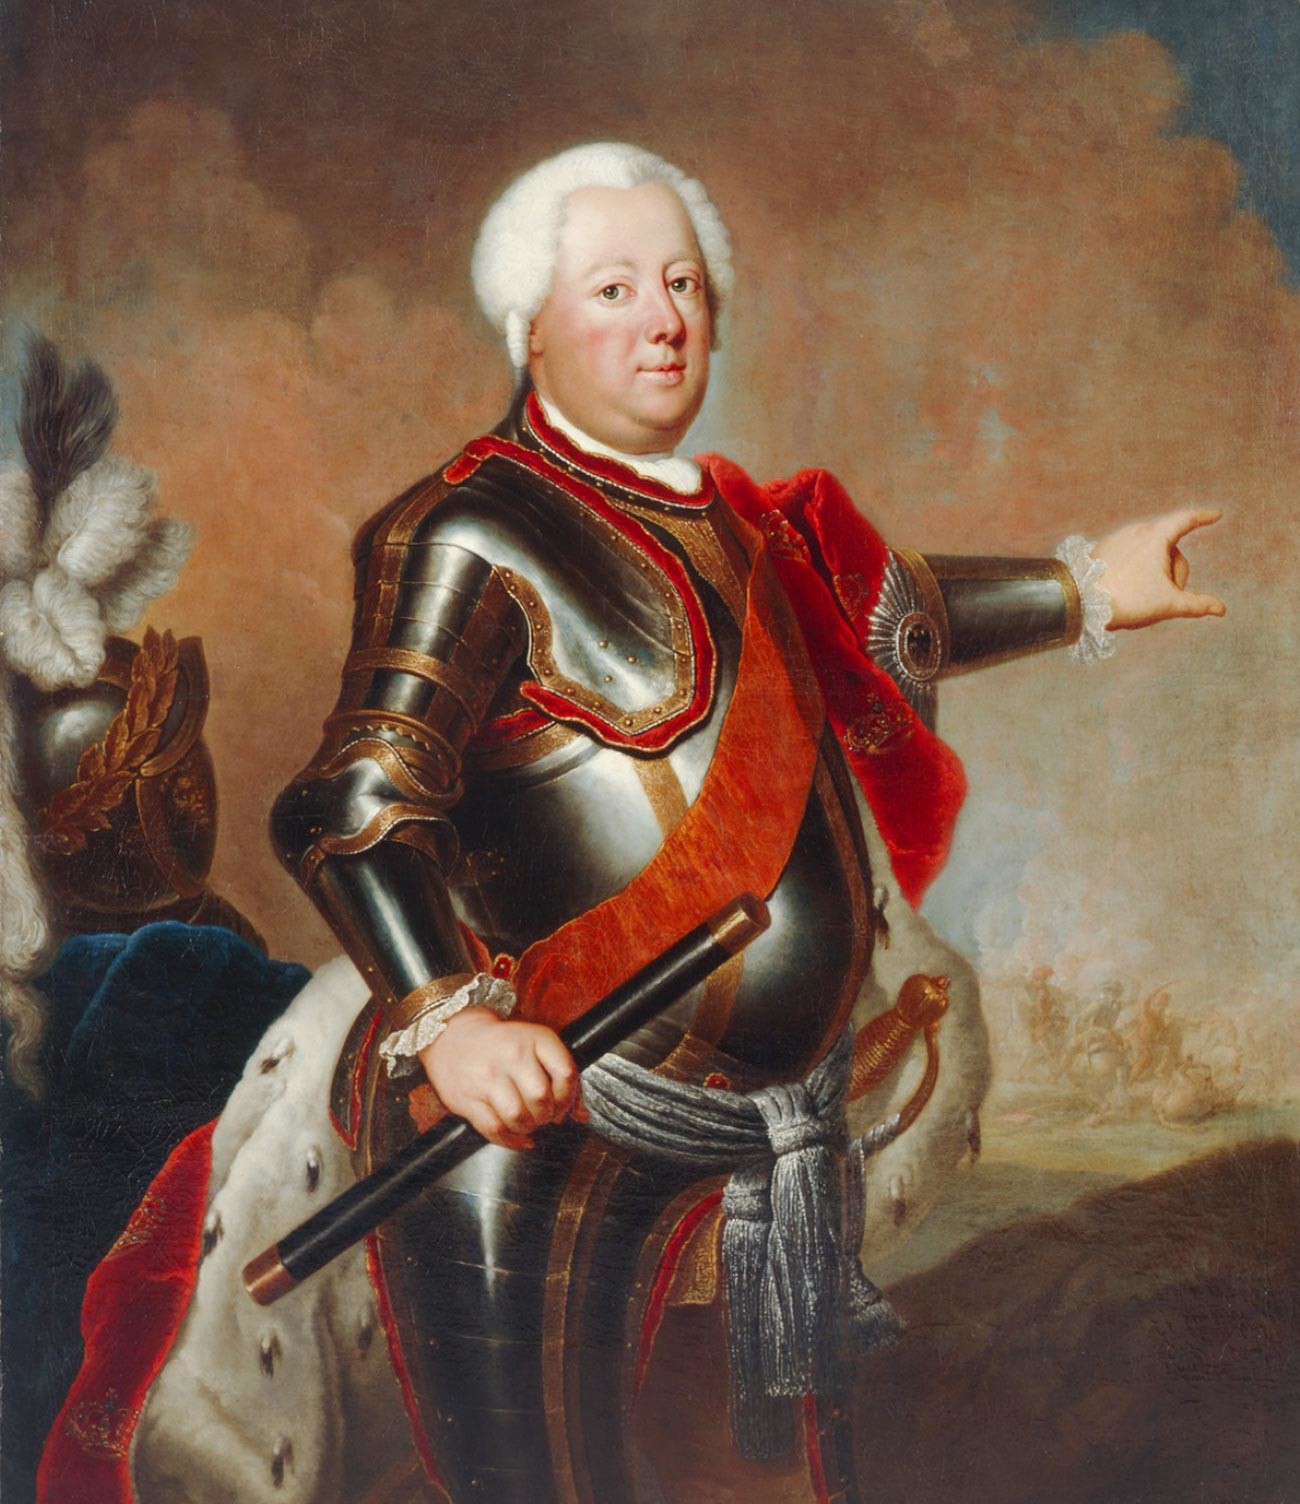 Retrato do rei prussiano Frederico Guilherme